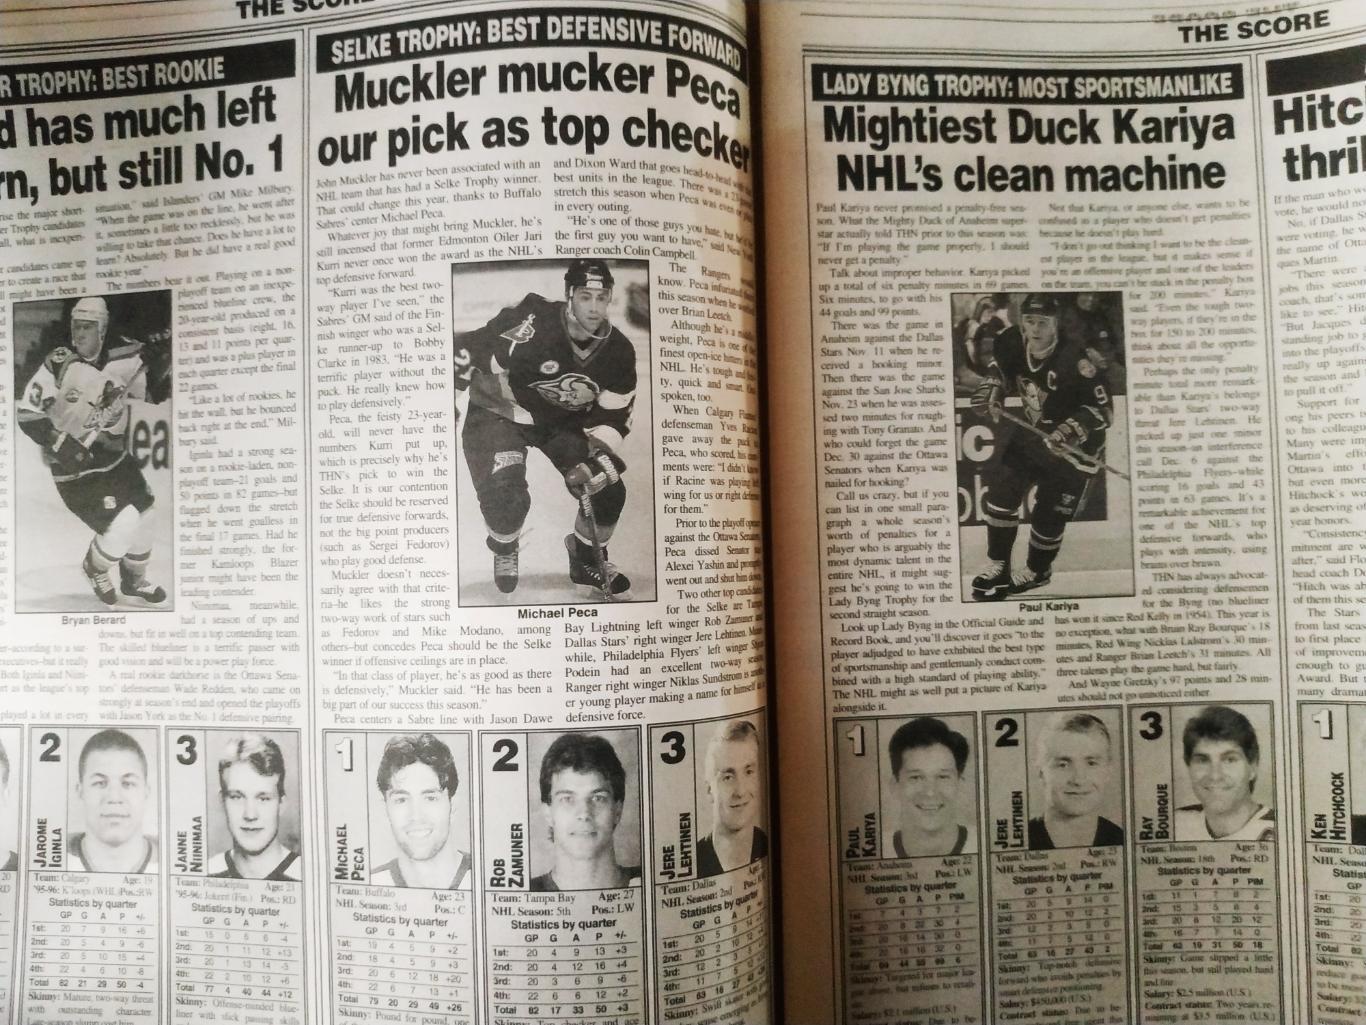 ХОККЕЙ ЖУРНАЛ ЕЖЕНЕДЕЛЬНИК НХЛ НОВОСТИ ХОККЕЯ NHL MAY.2 1997 THE HOCKEY NEWS 3